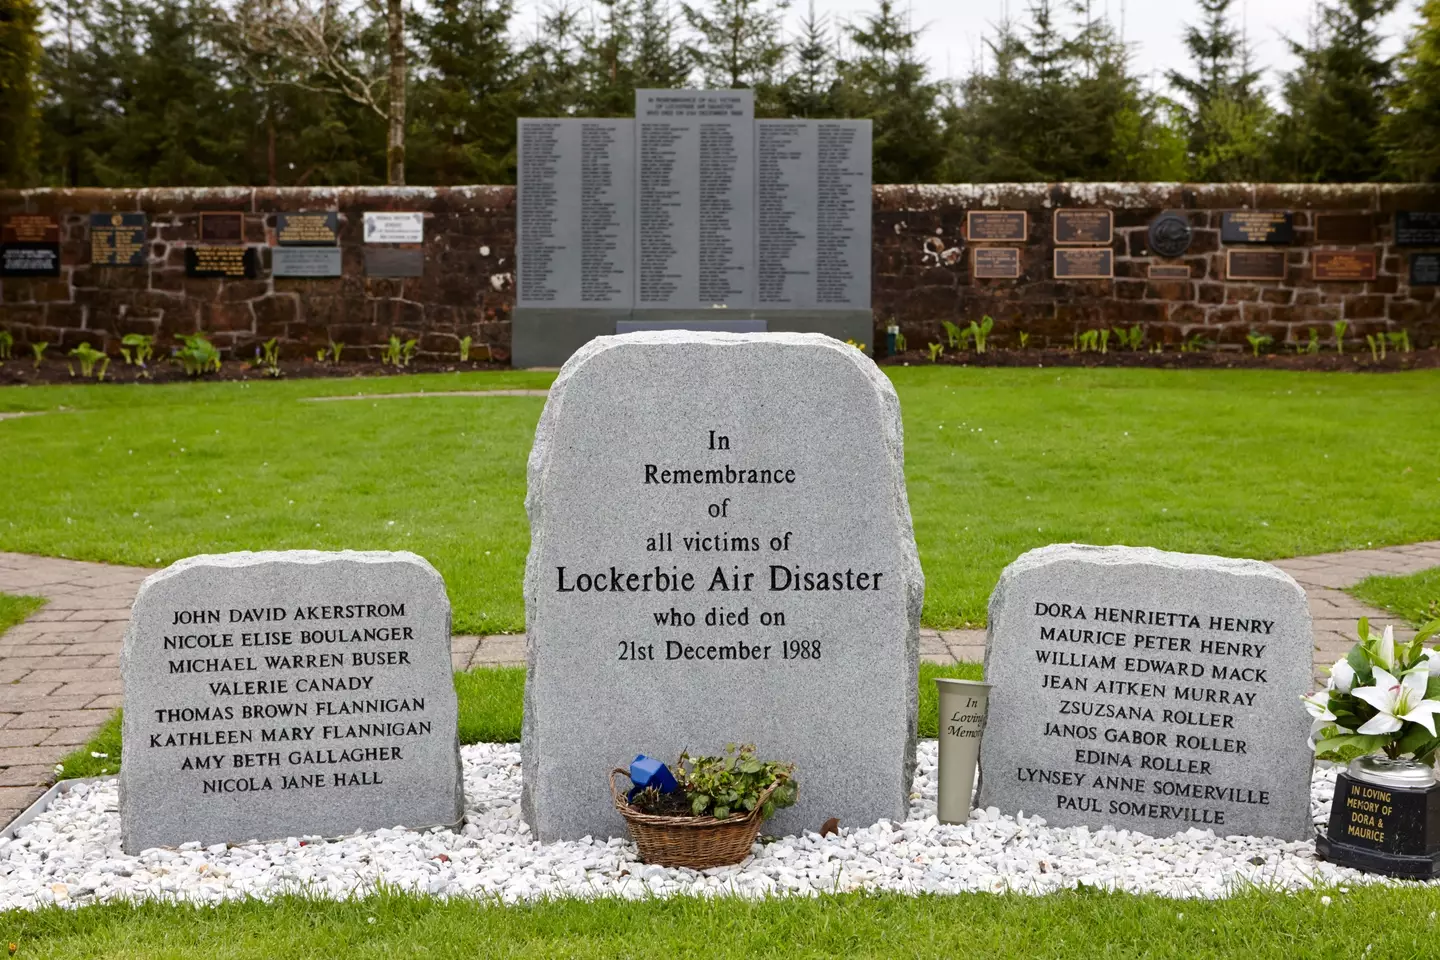 Lockerbie memorial in dryfesdale cemetery, Scotland.